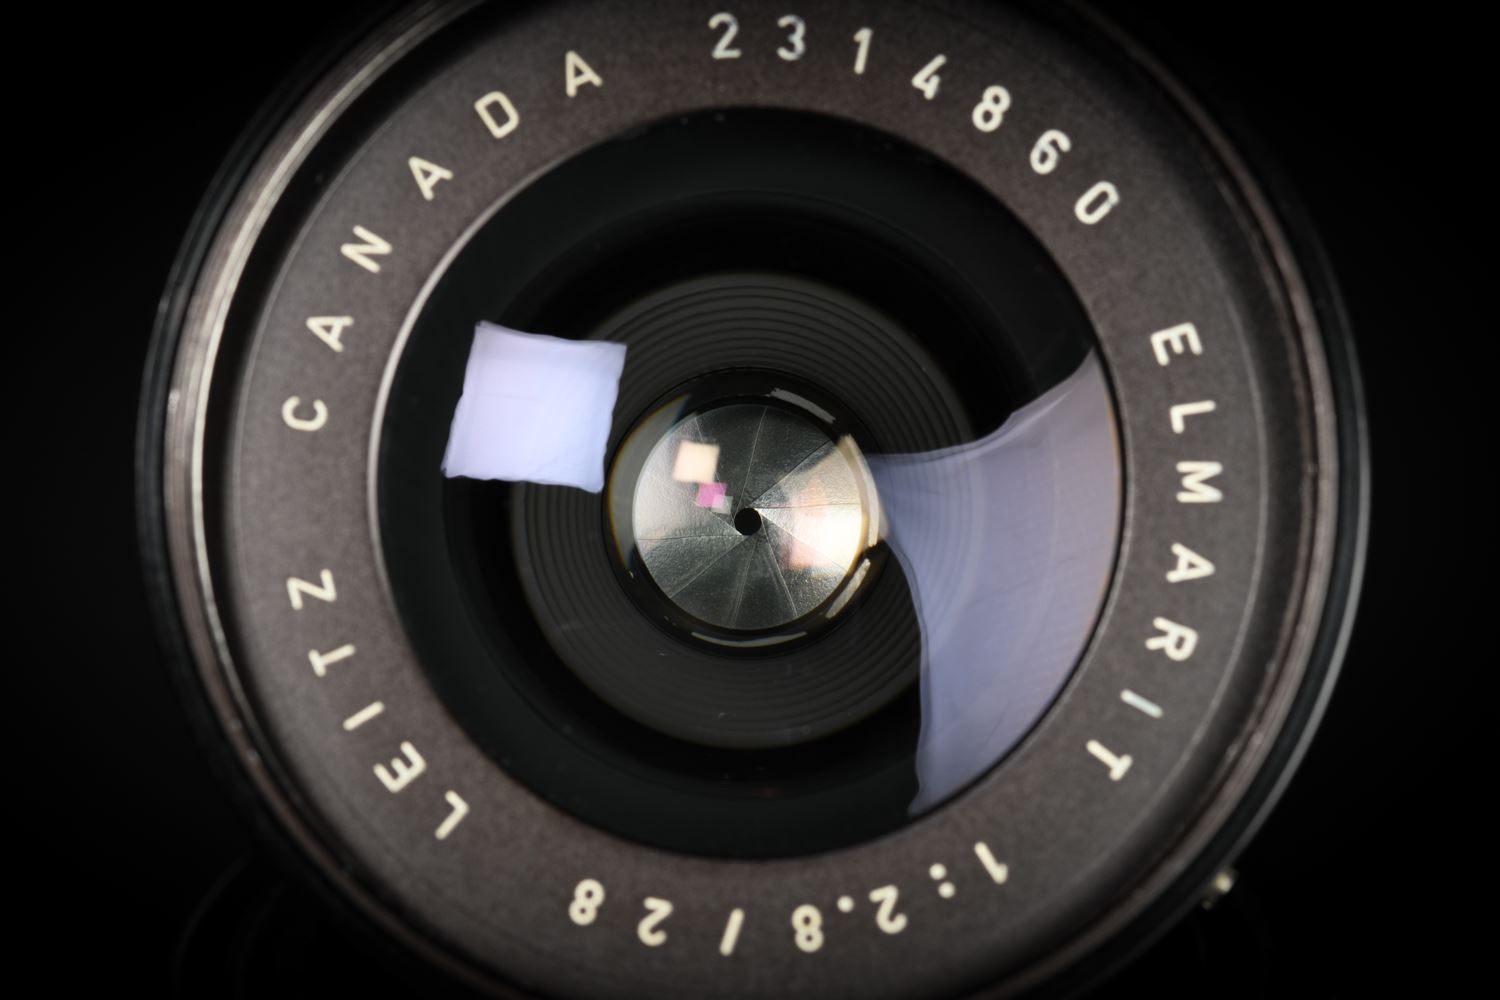 Picture of Leica Elmarit-M 28mm f/2.8 Ver.1 Canada 9-element